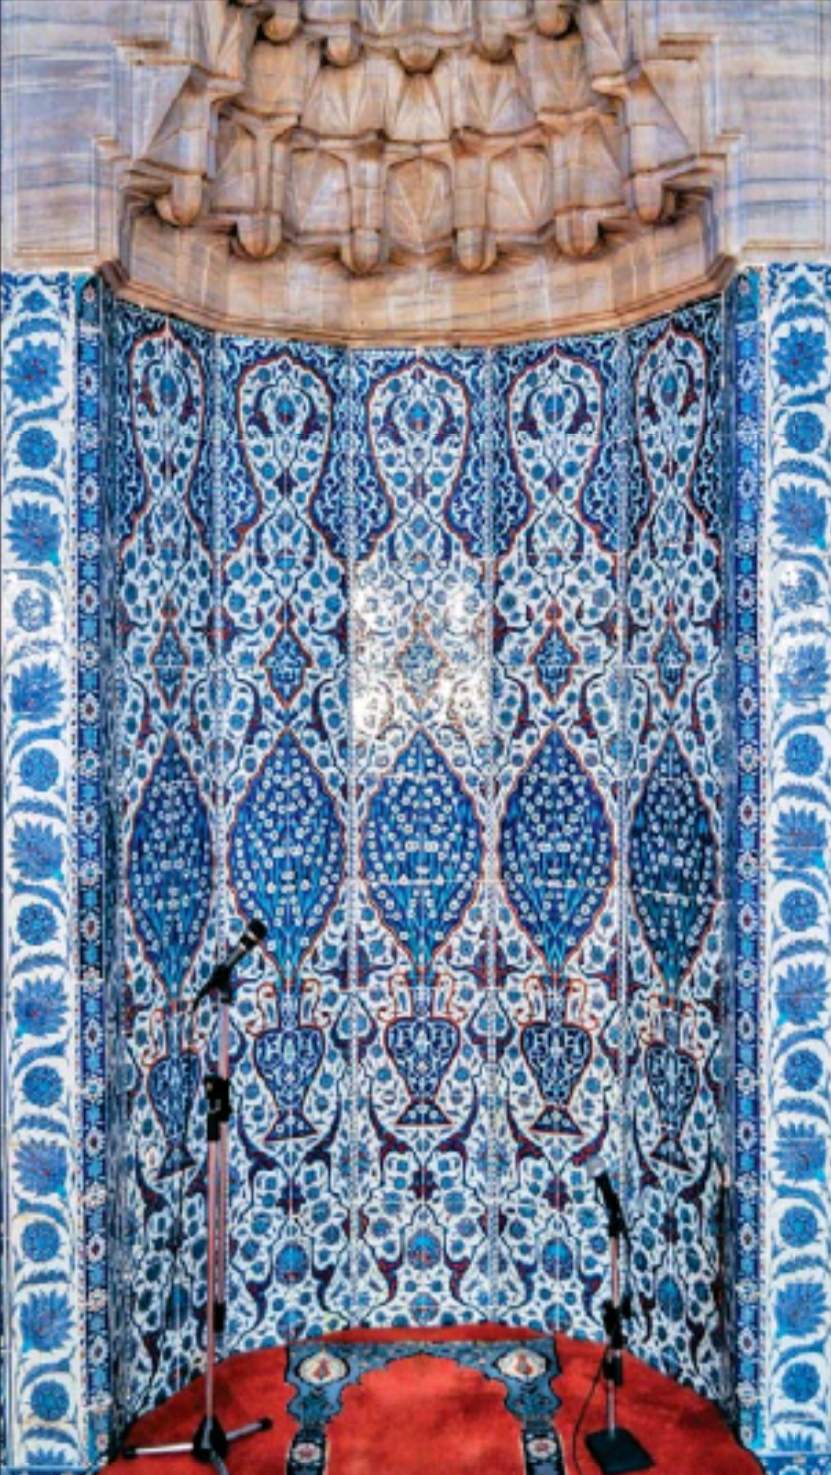 IMG_20230222_092106.jpg - Pločice bošnjačke džamije u Istanbulu